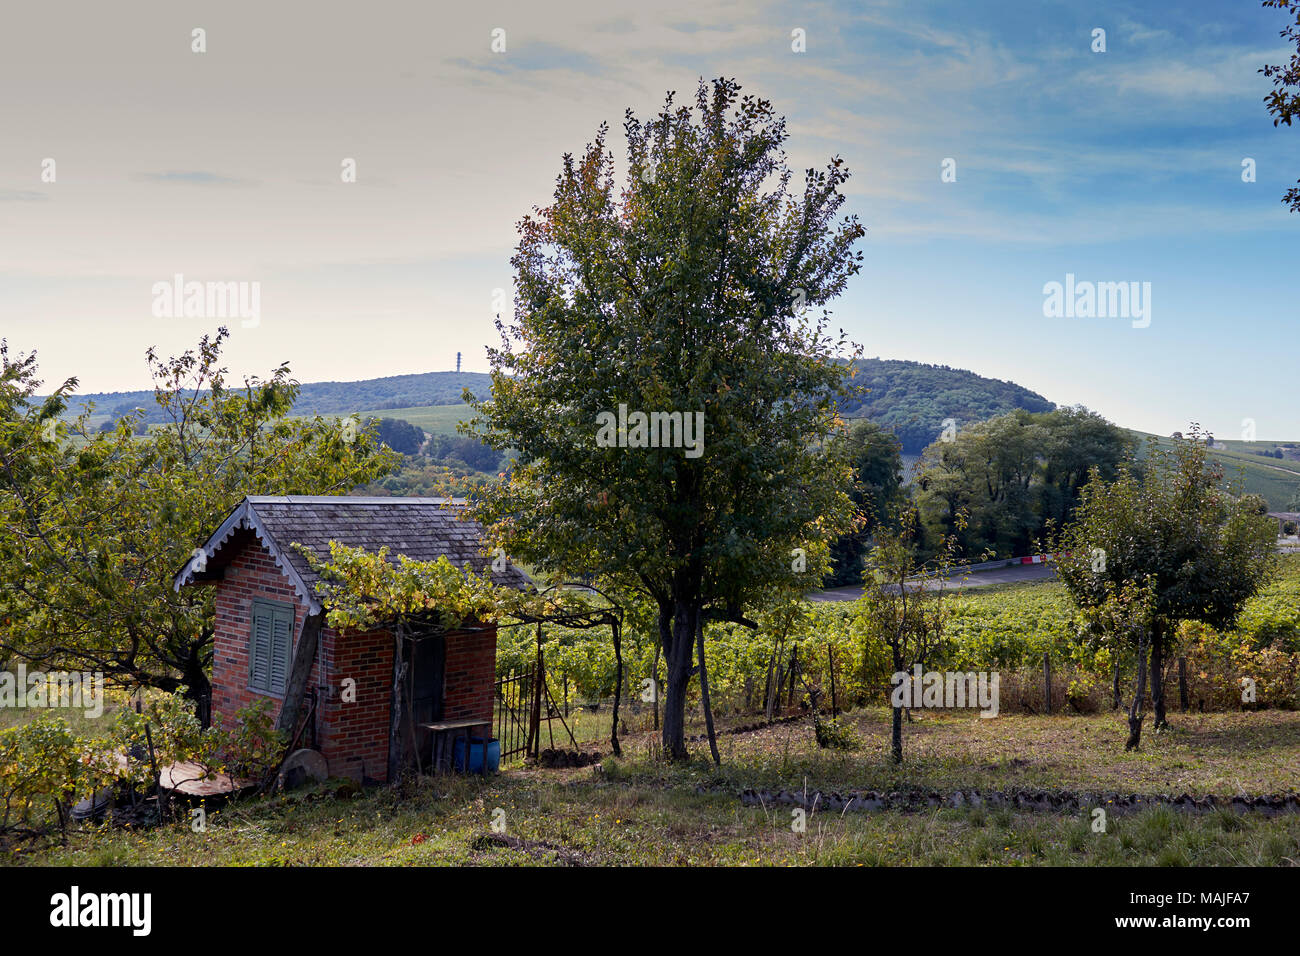 Vue sur domaine viticole terrain avec cabane, de vignes et d'arbres. Sancerre, France Banque D'Images